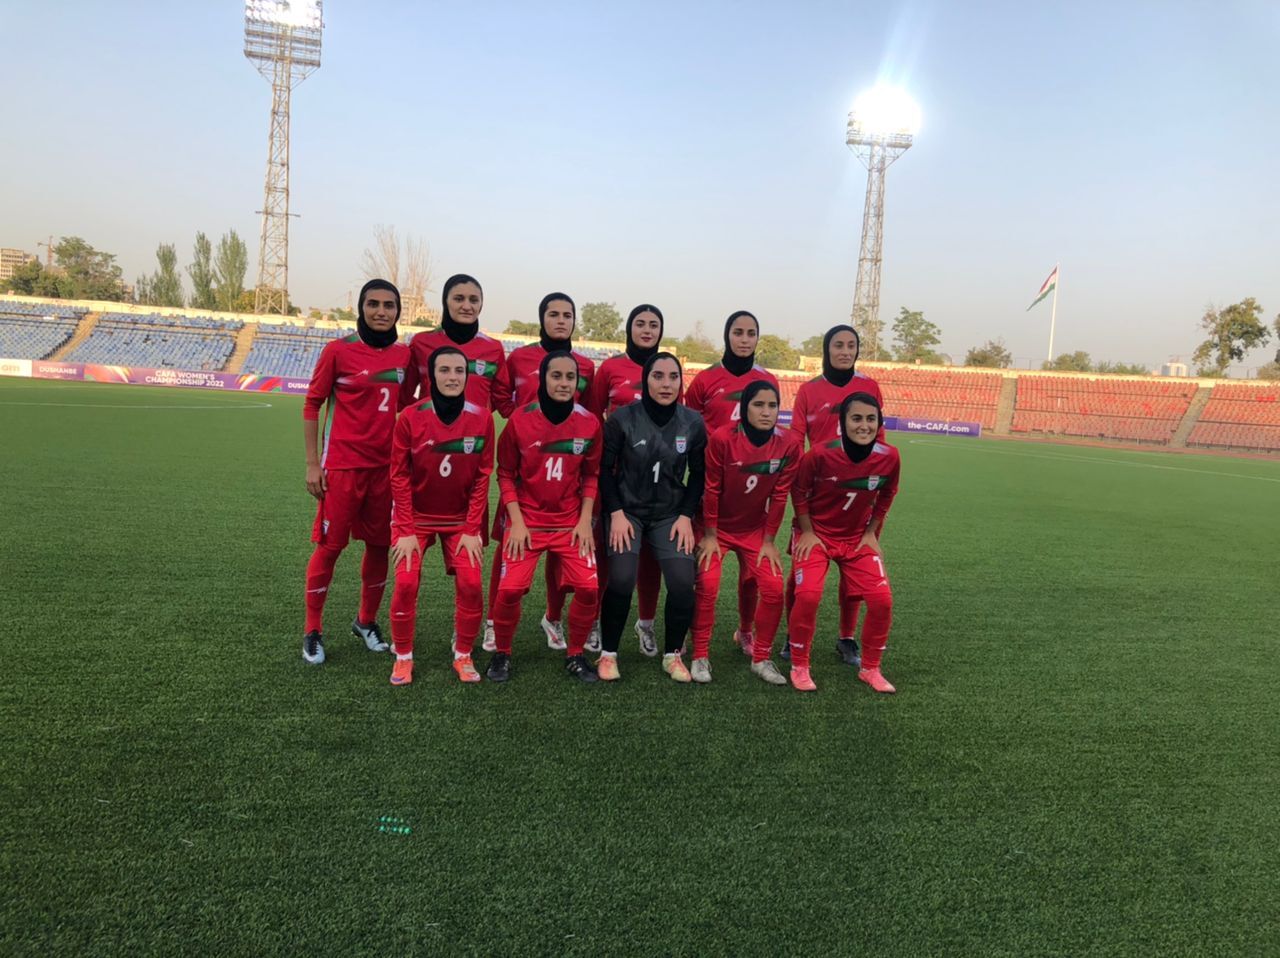 نایب قهرمانی تیم ملی فوتبال زنان در تورنمنت کافا تاجیکستان